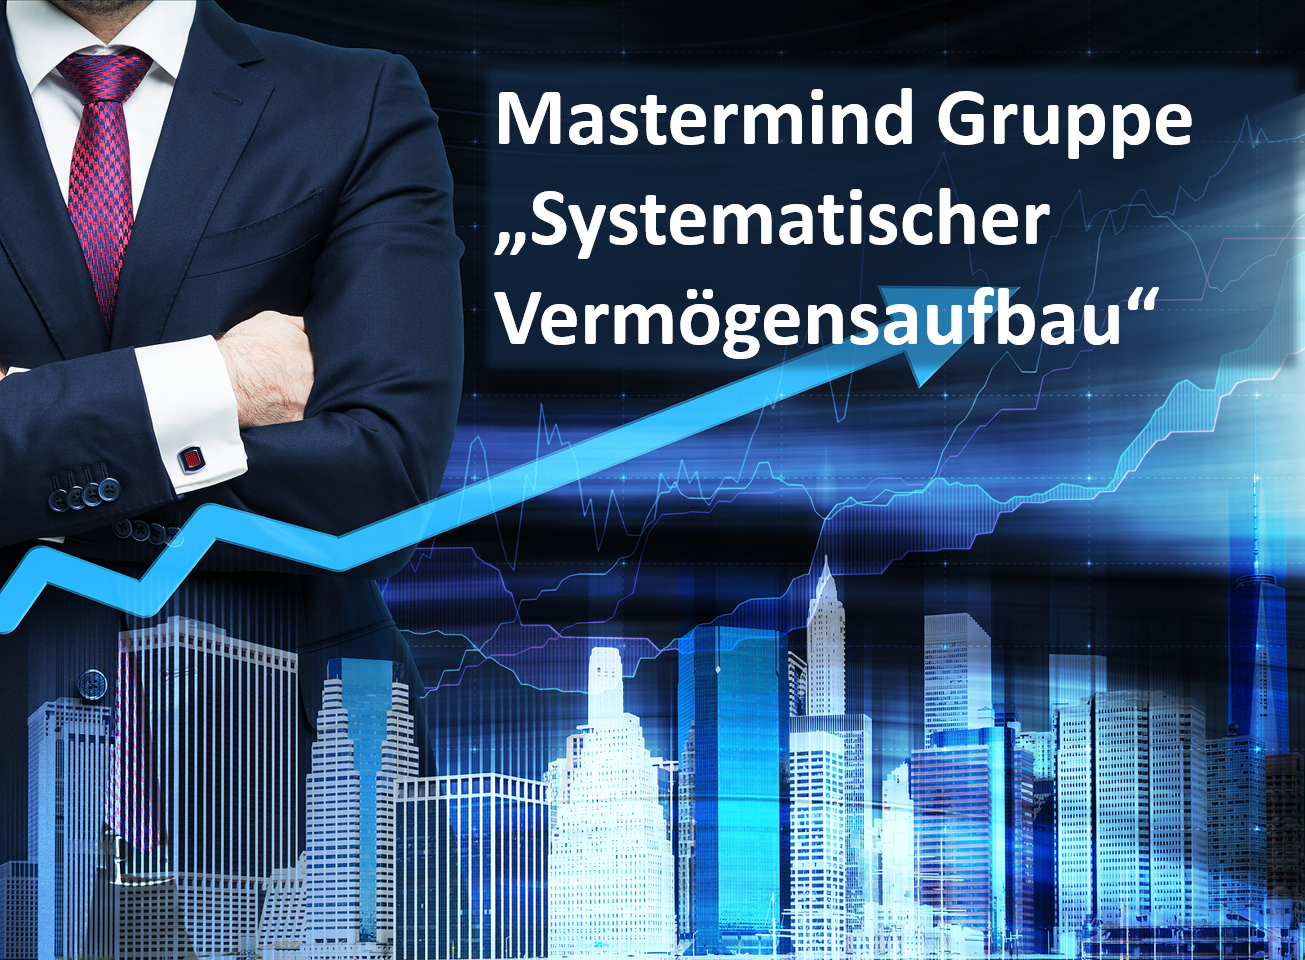 Mastermind-Gruppe-Systematischer-Vemoegensaufbau.png